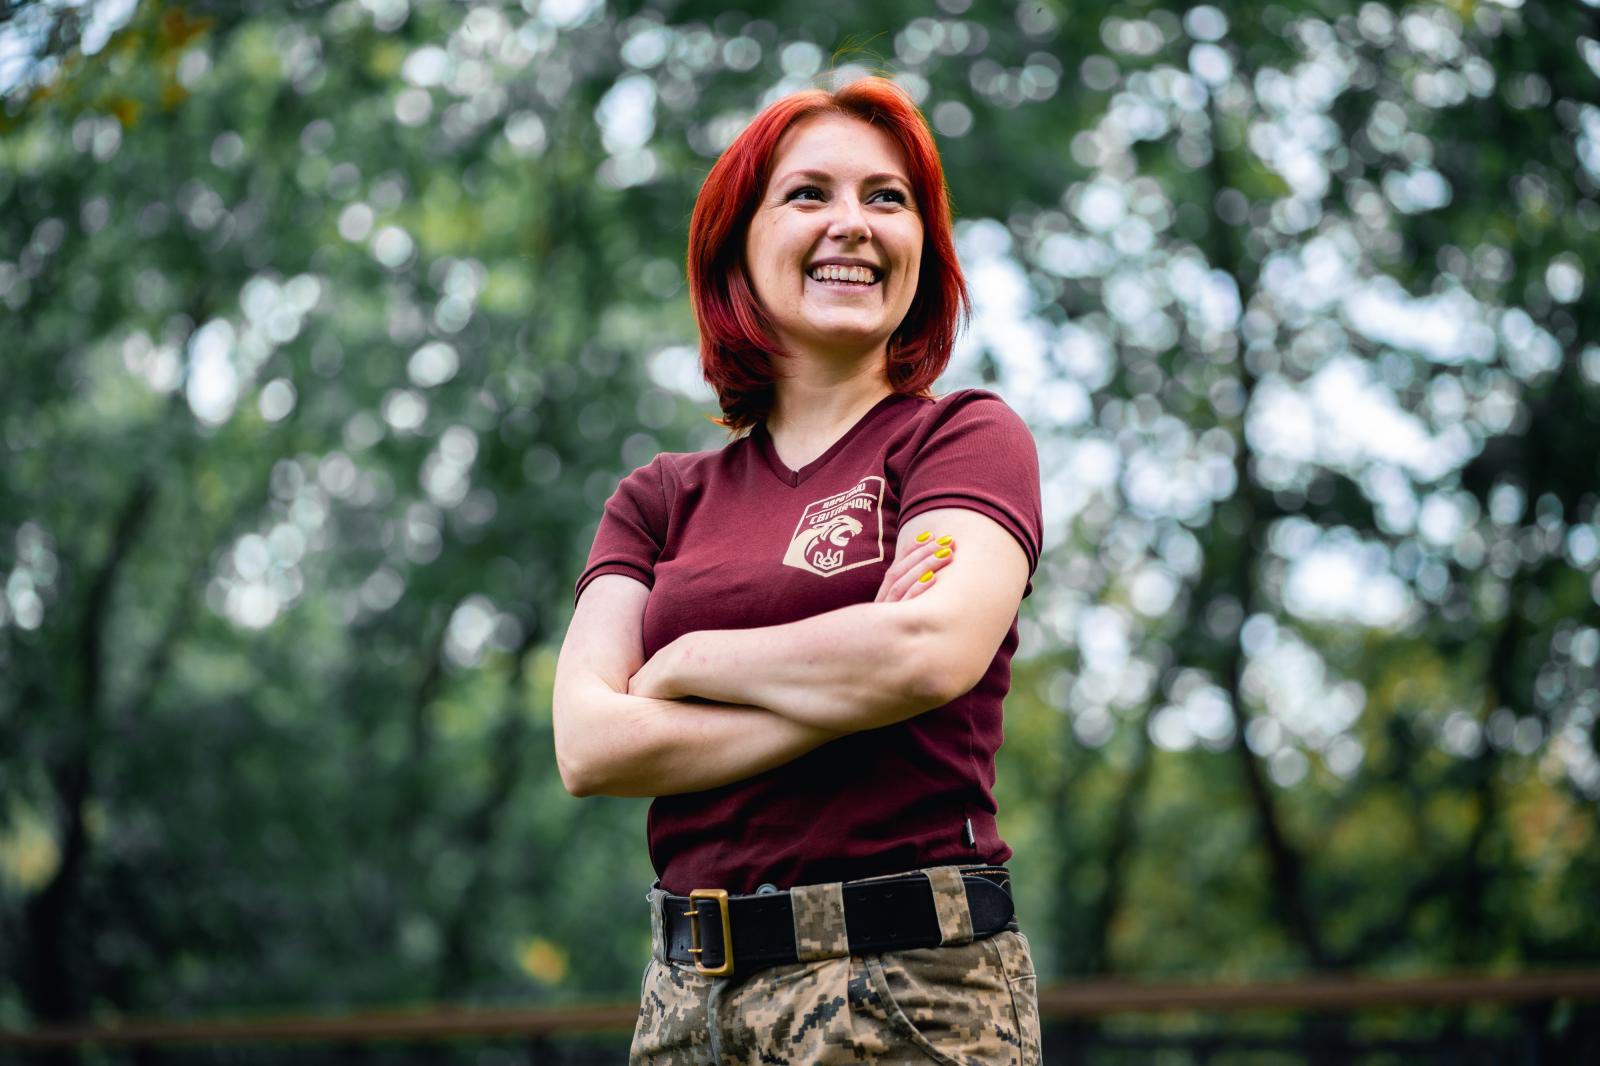 Female Veterans of Donbas